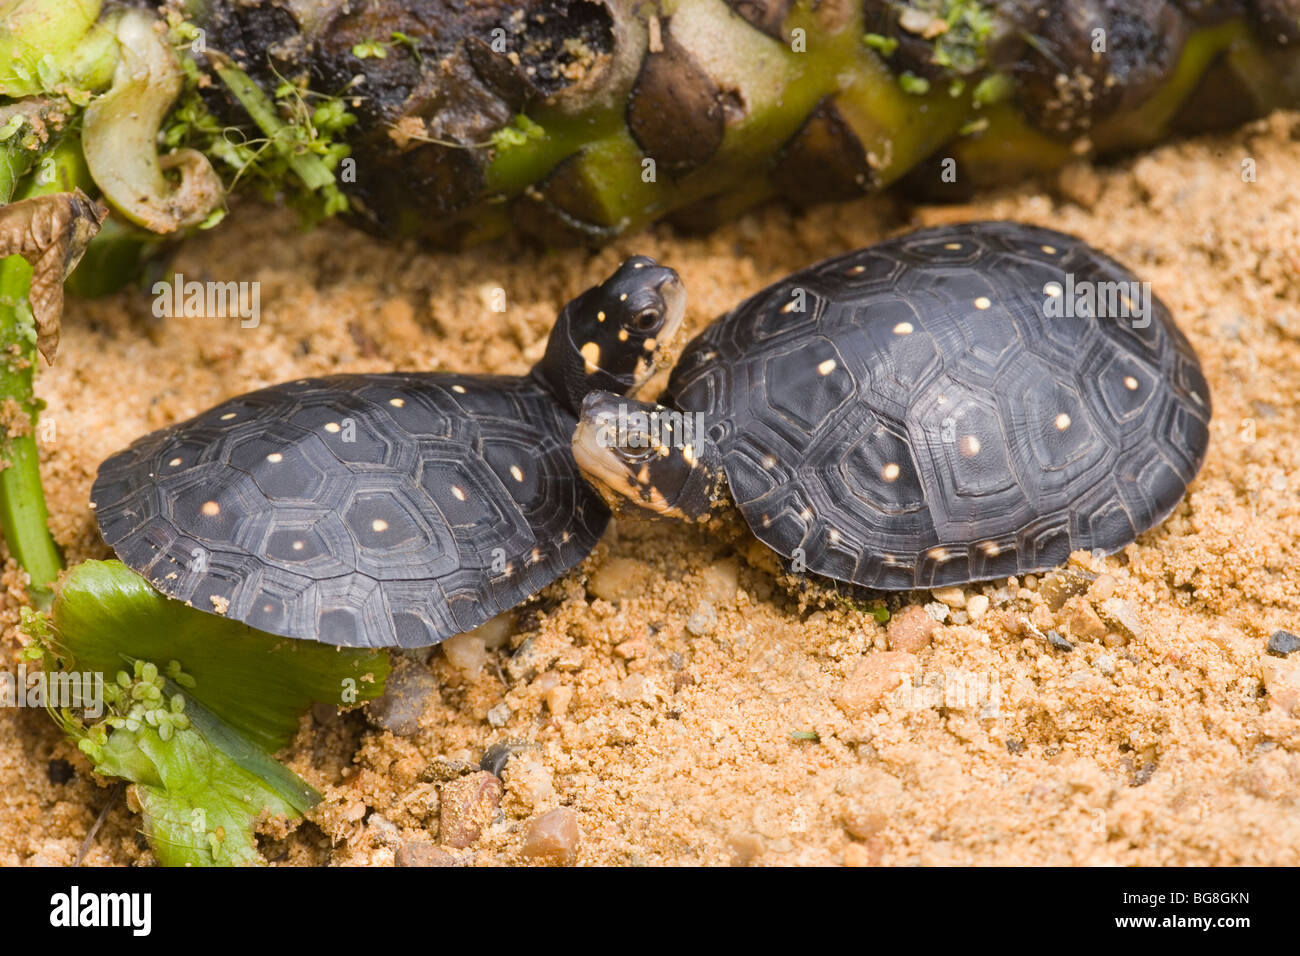 Les tortues ponctuées d'Amérique du nord (Clemmys guttata). Banque D'Images